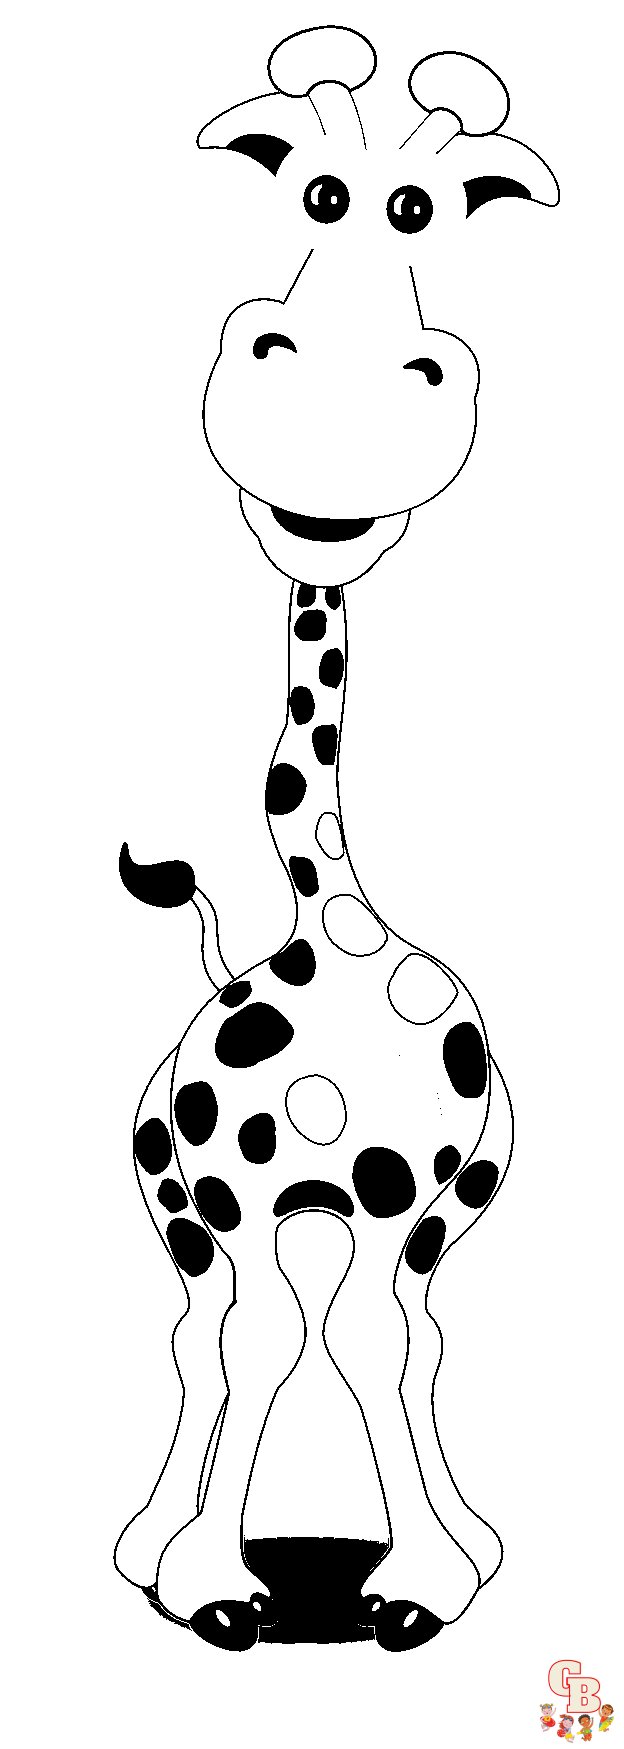 Giraffe kleurplaten Leuke, realistische en cartoon afbeeldingen om te printen